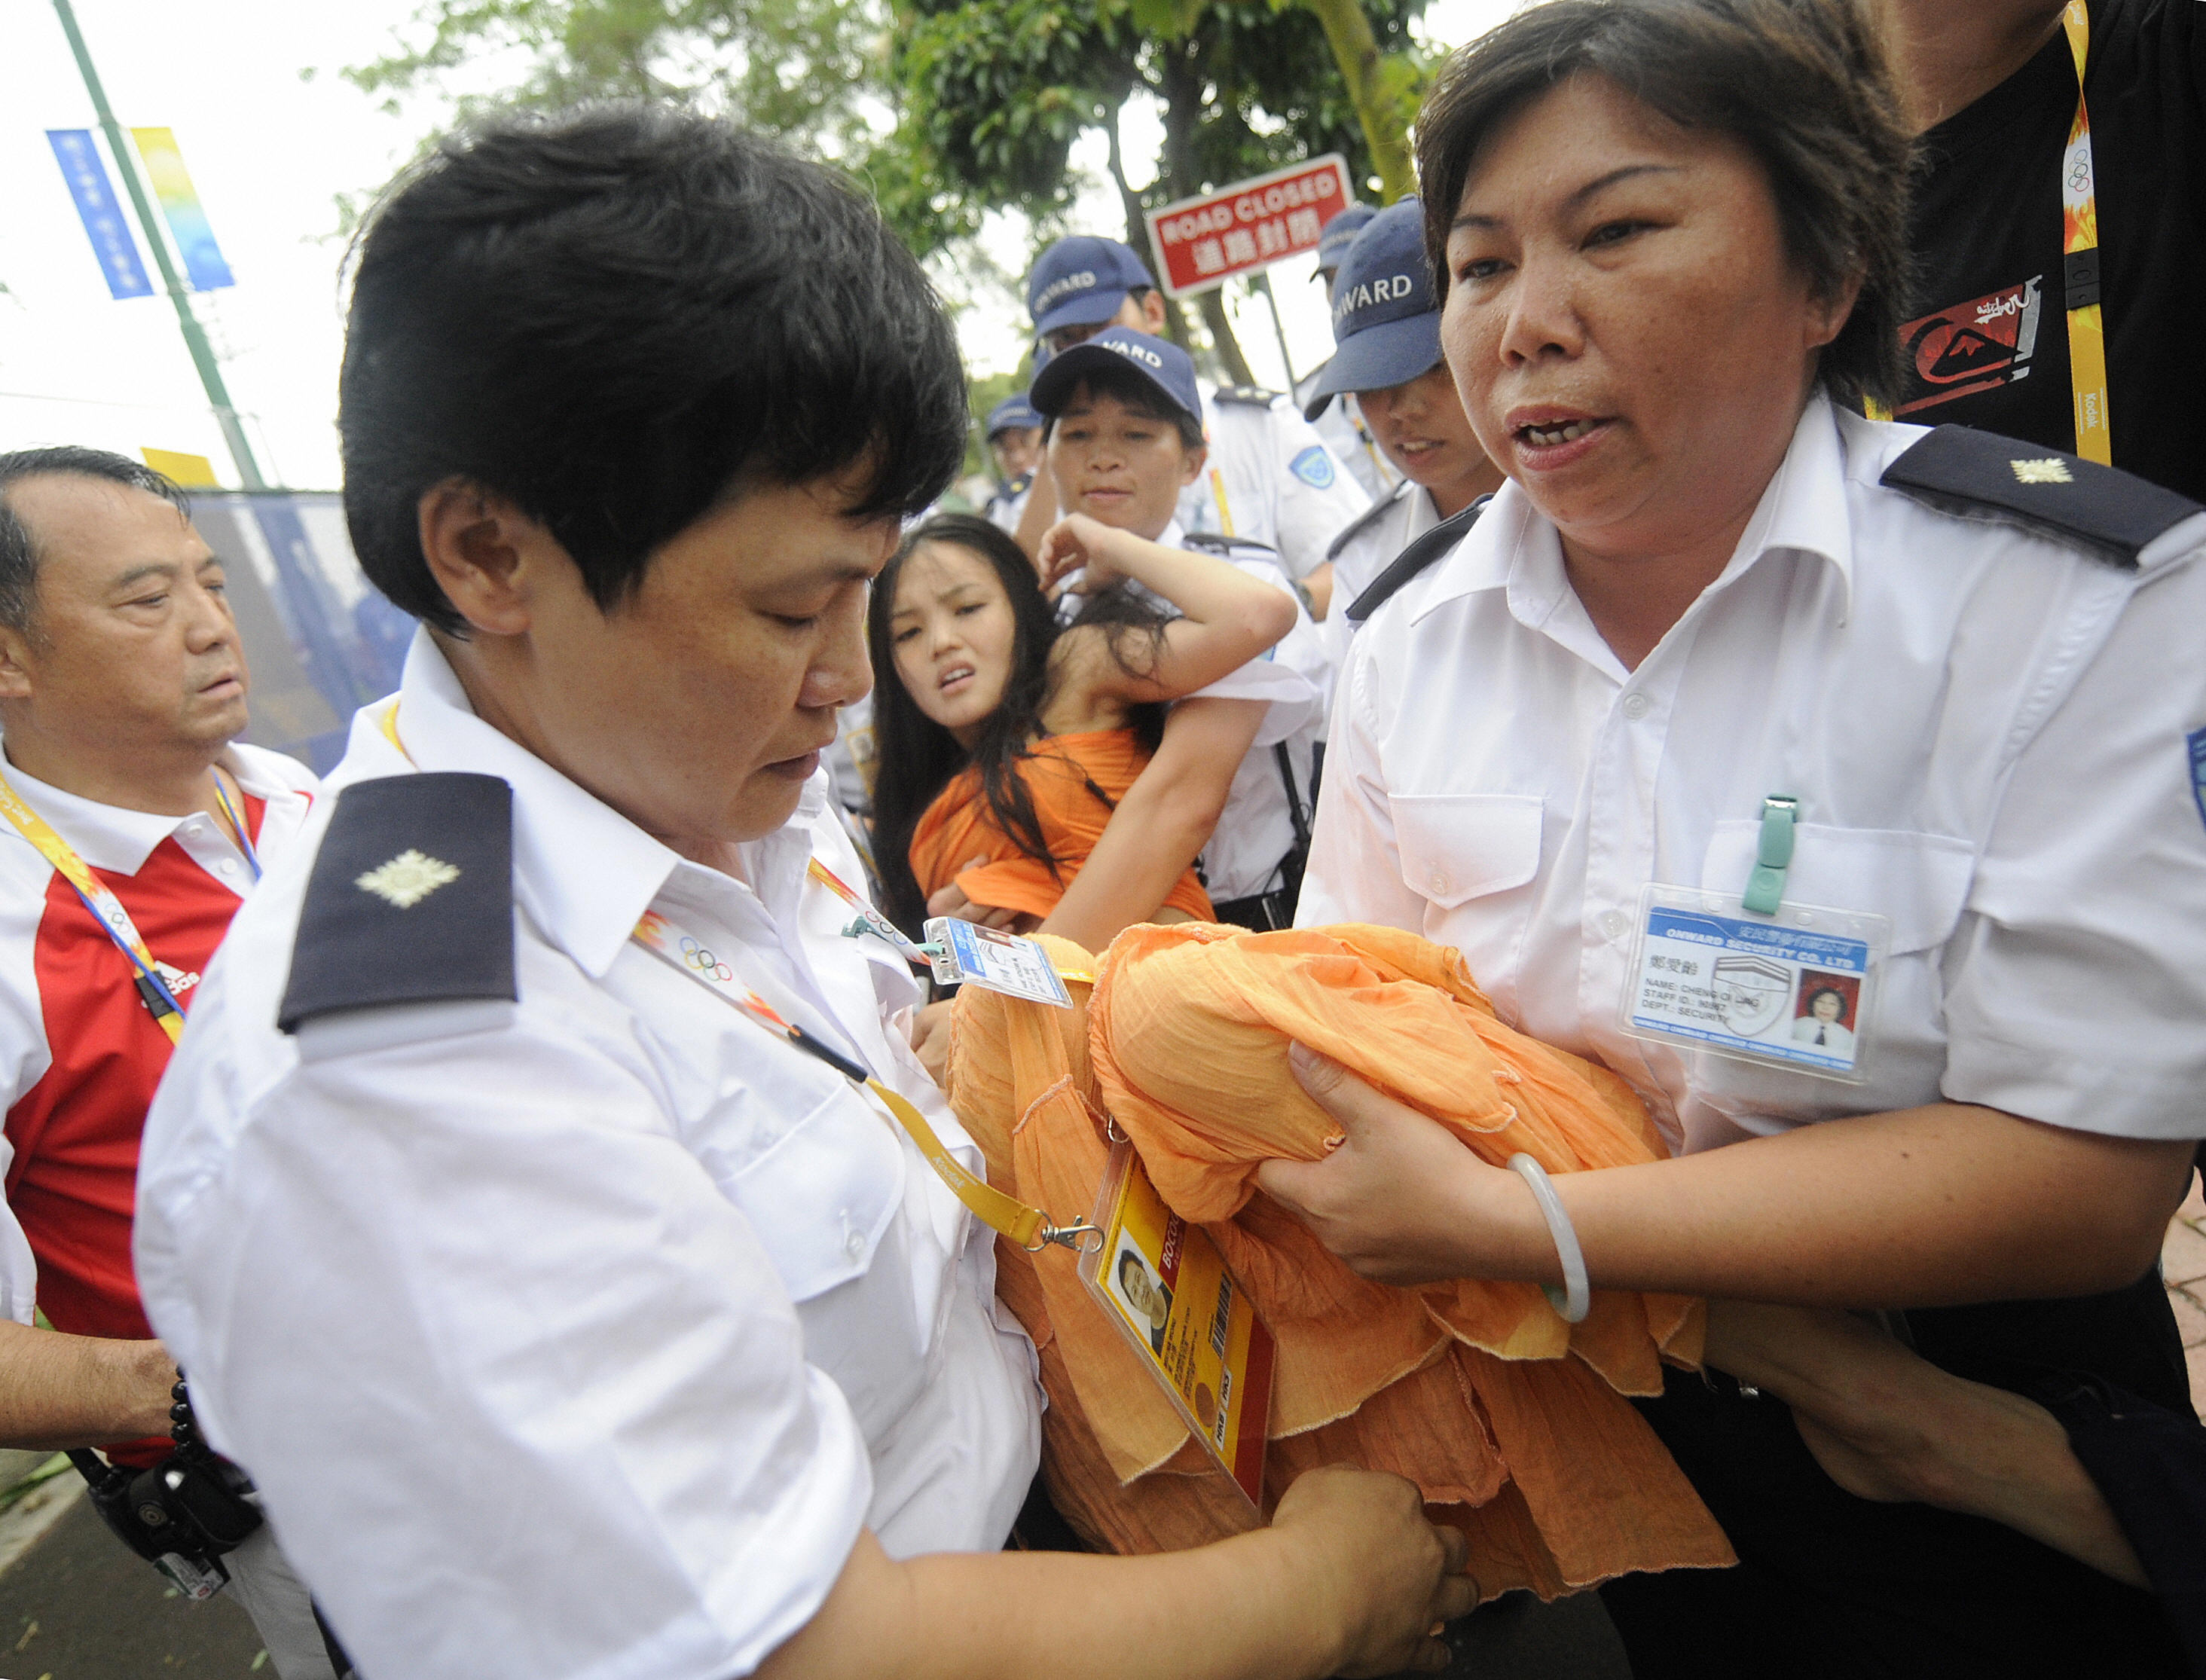 香港大學女生陳巧文8月9日突破防線成功在奧運馬術比賽場內高舉雪山獅子旗及高呼藏獨口號後被港警拖出場外。